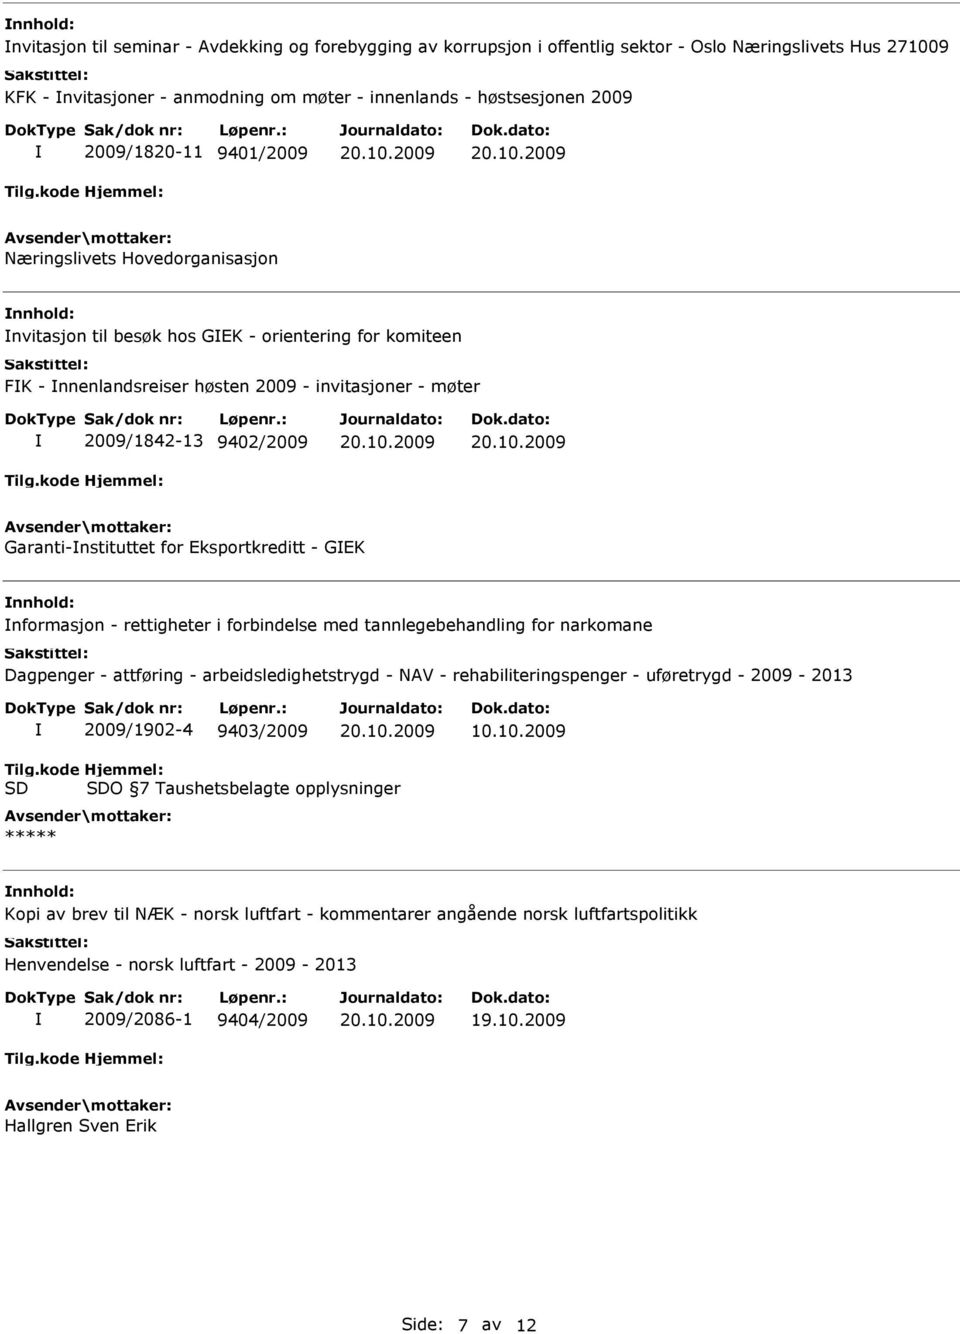 Eksportkreditt - GEK nformasjon - rettigheter i forbindelse med tannlegebehandling for narkomane Dagpenger - attføring - arbeidsledighetstrygd - NAV - rehabiliteringspenger - uføretrygd - 2009-2013